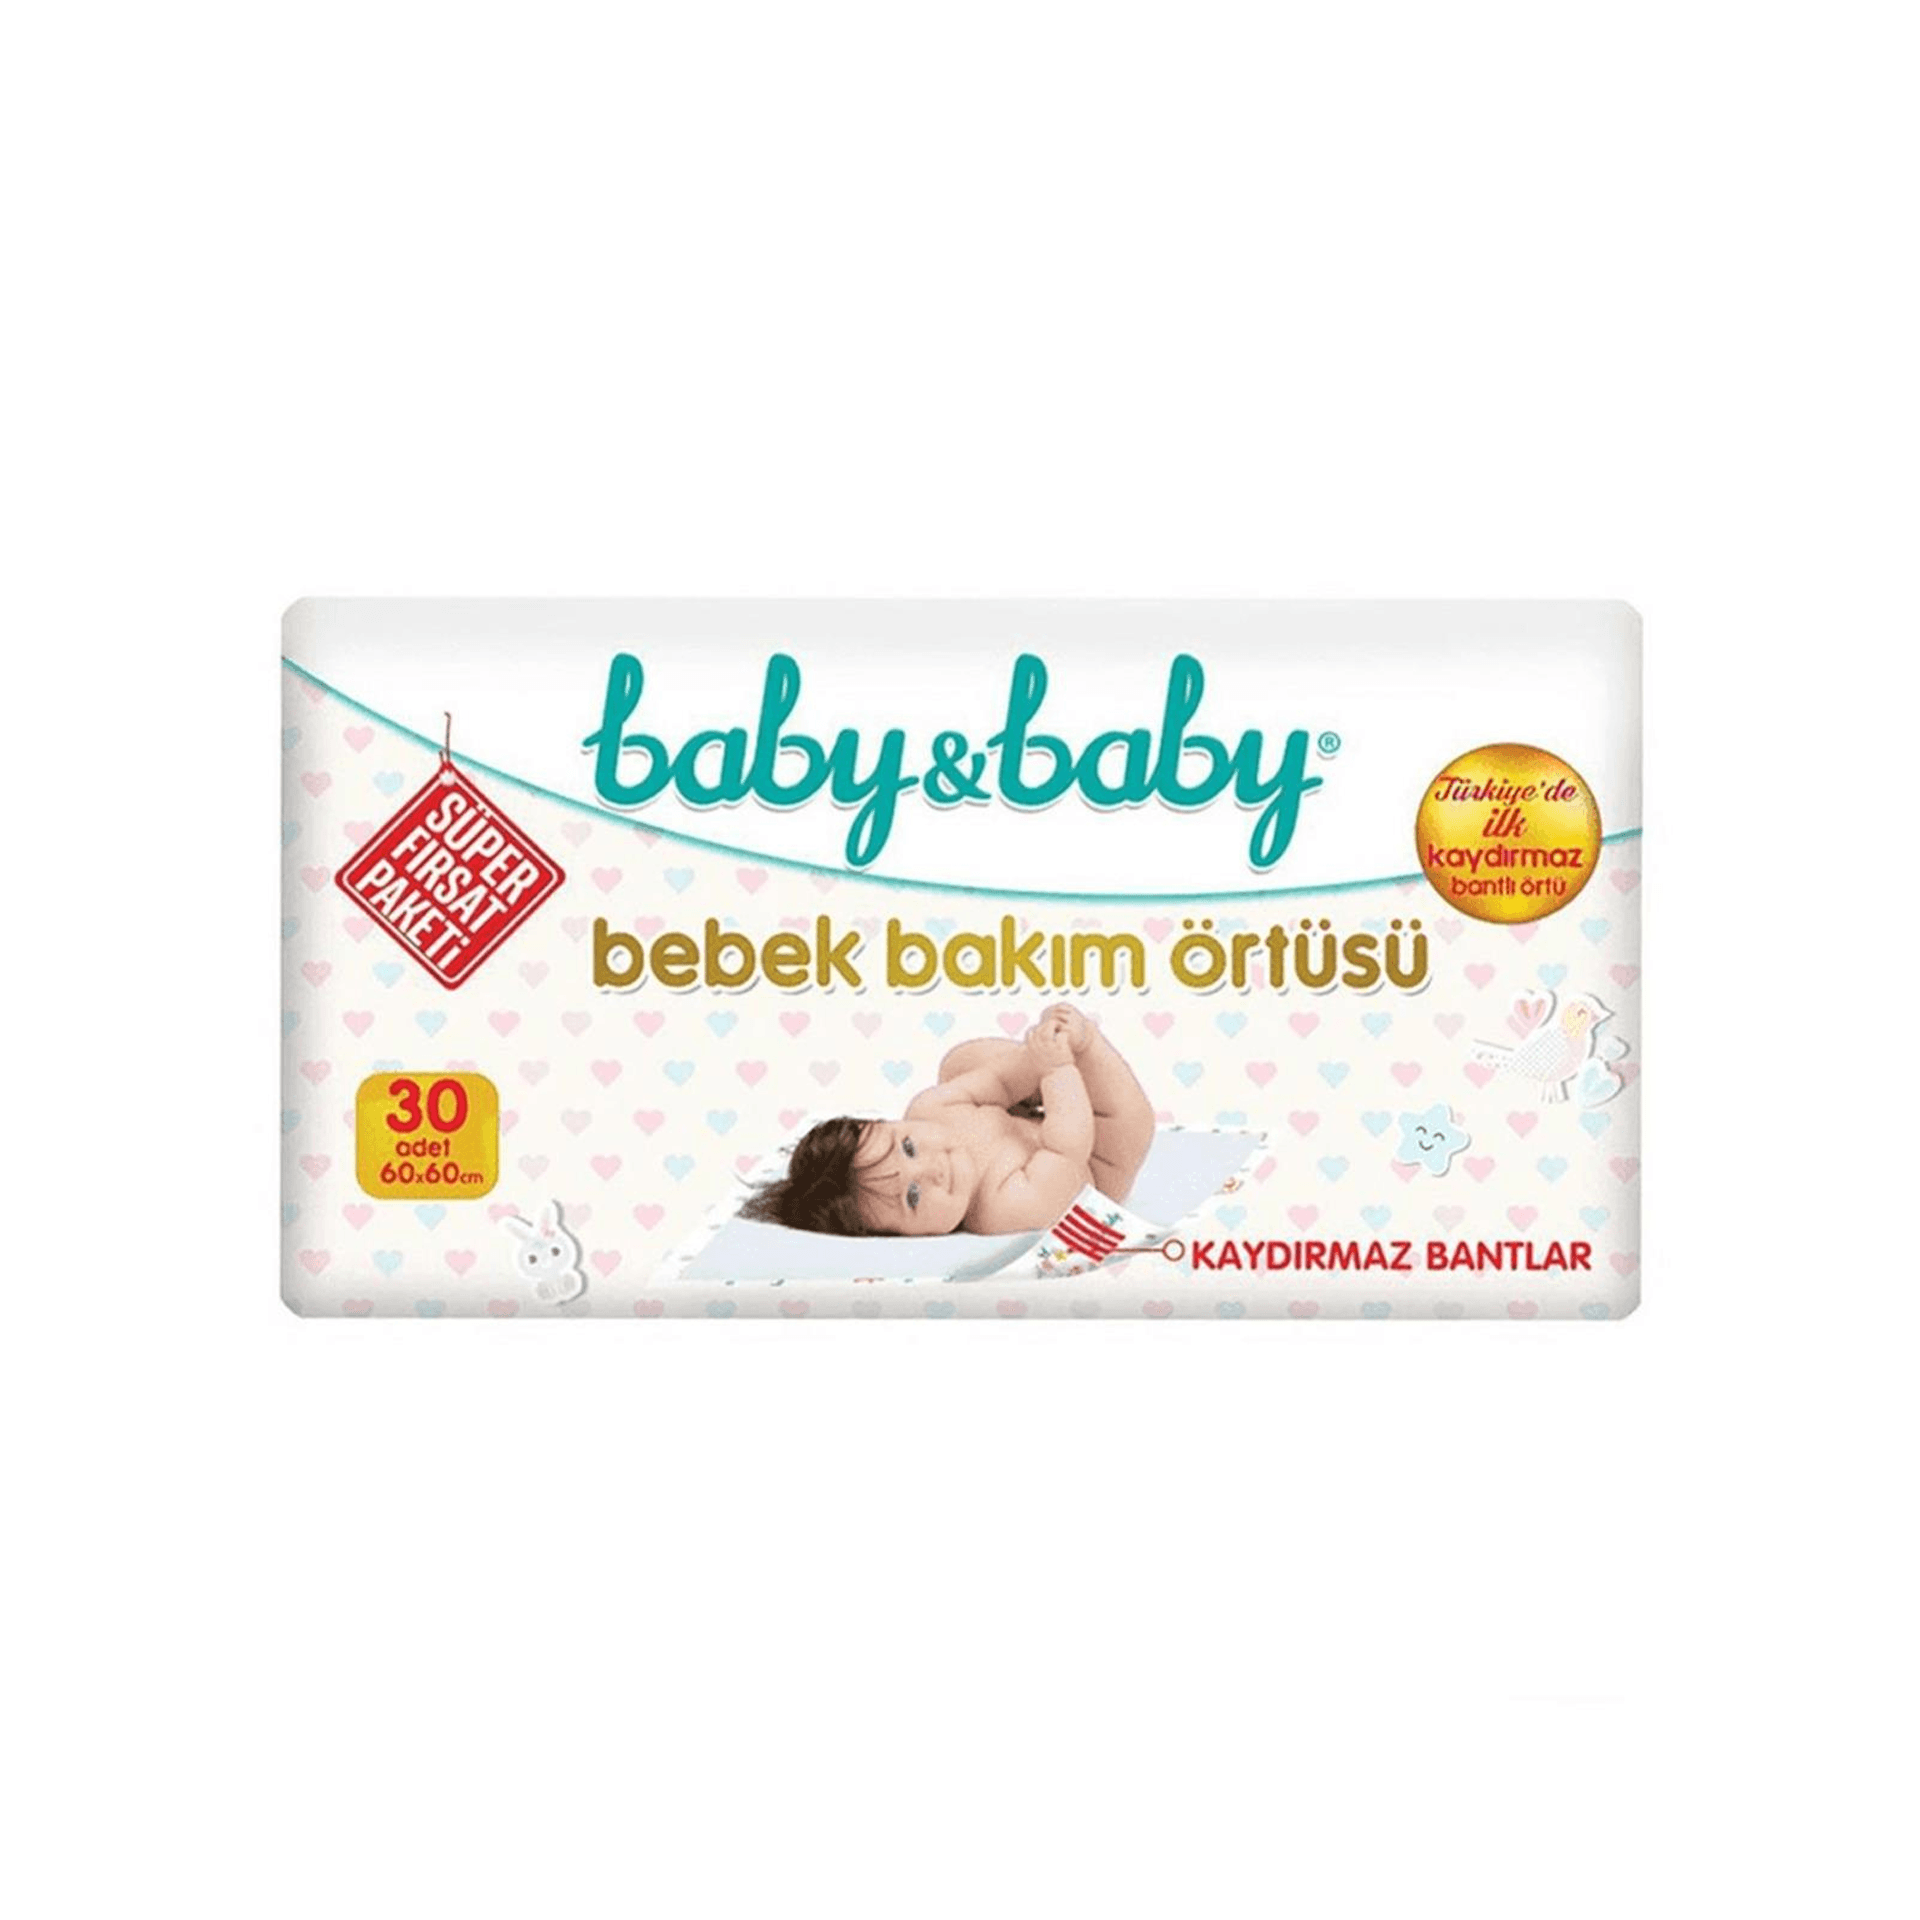 Baby&Baby Kaydırmaz Bantlı Bakım Örtüsü Avantaj Paket 30 Adet 